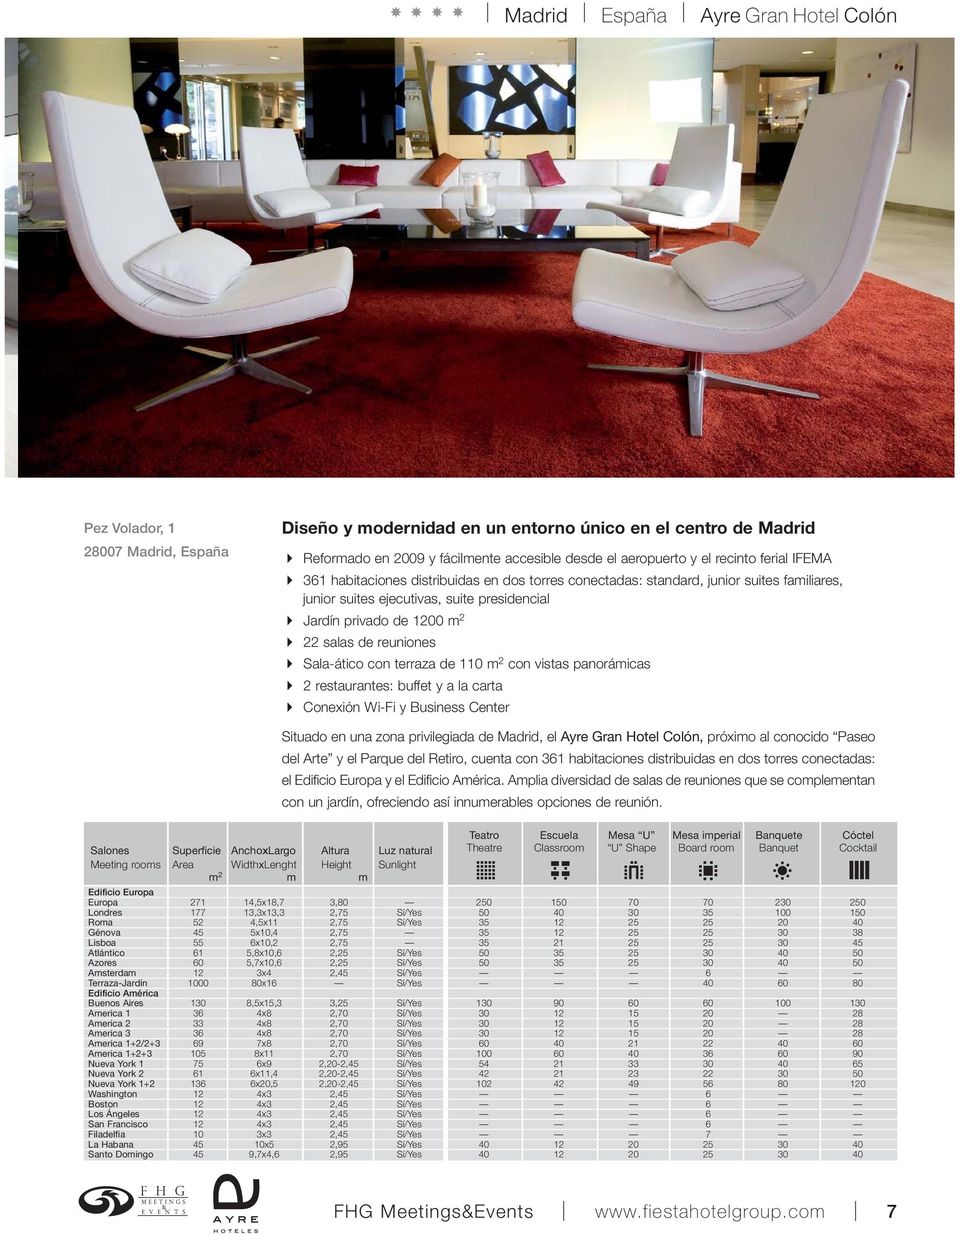 2 22 salas de reuniones Sala-ático con terraza de 110 m 2 con vistas panorámicas 2 restaurantes: buffet y a la carta Conexión Wi-Fi y Business Center Situado en una zona privilegiada de Madrid, el